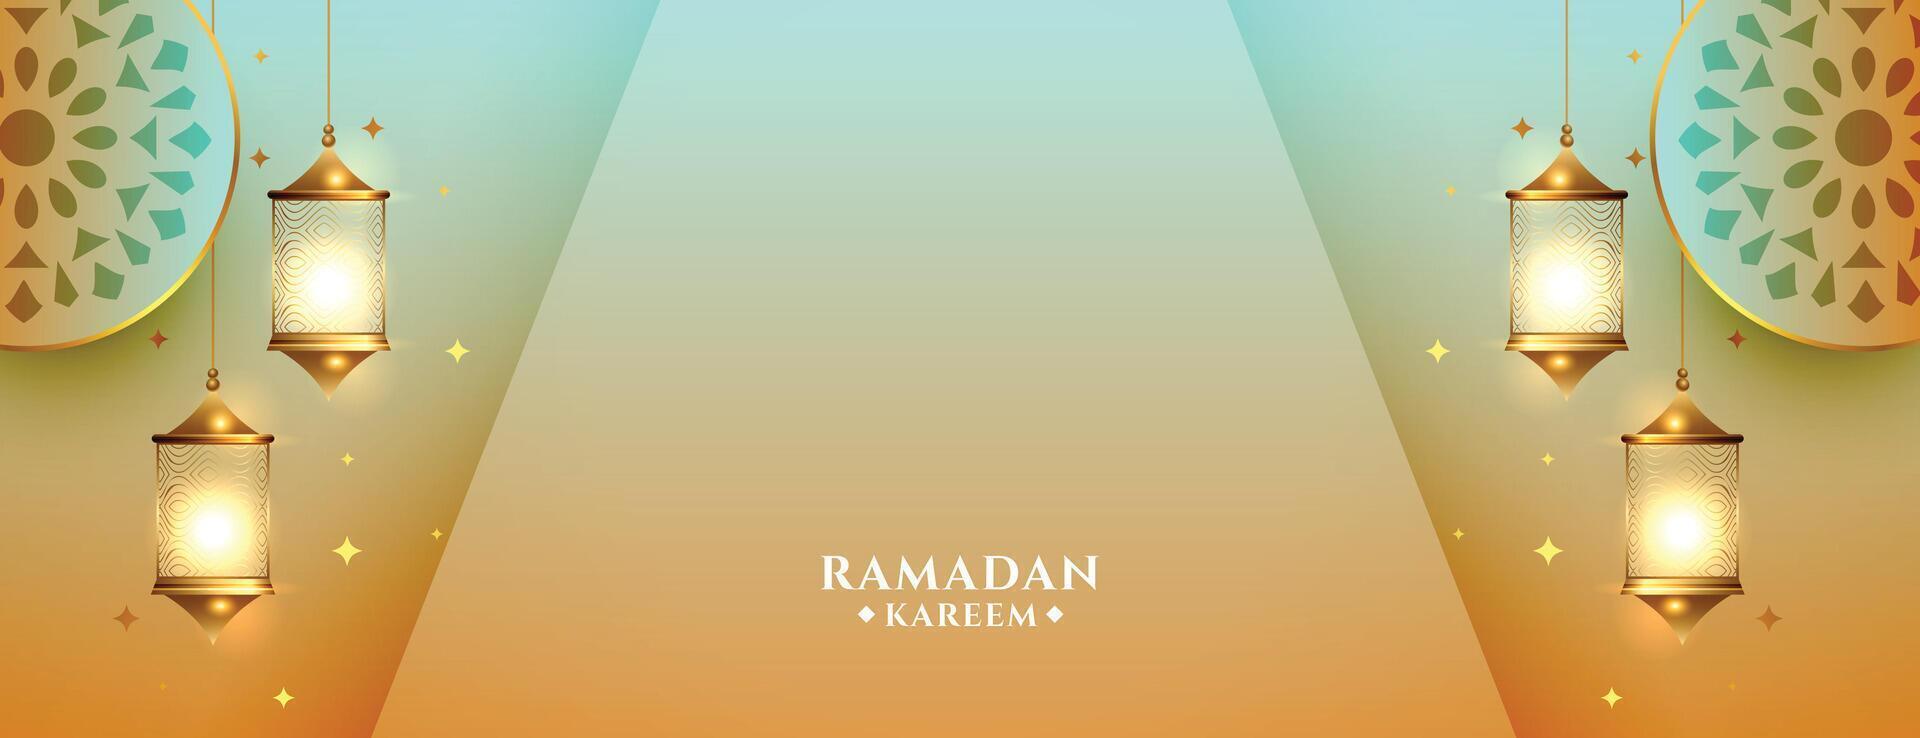 arabic islamic style ramadan kareem eid mubarak banner vector